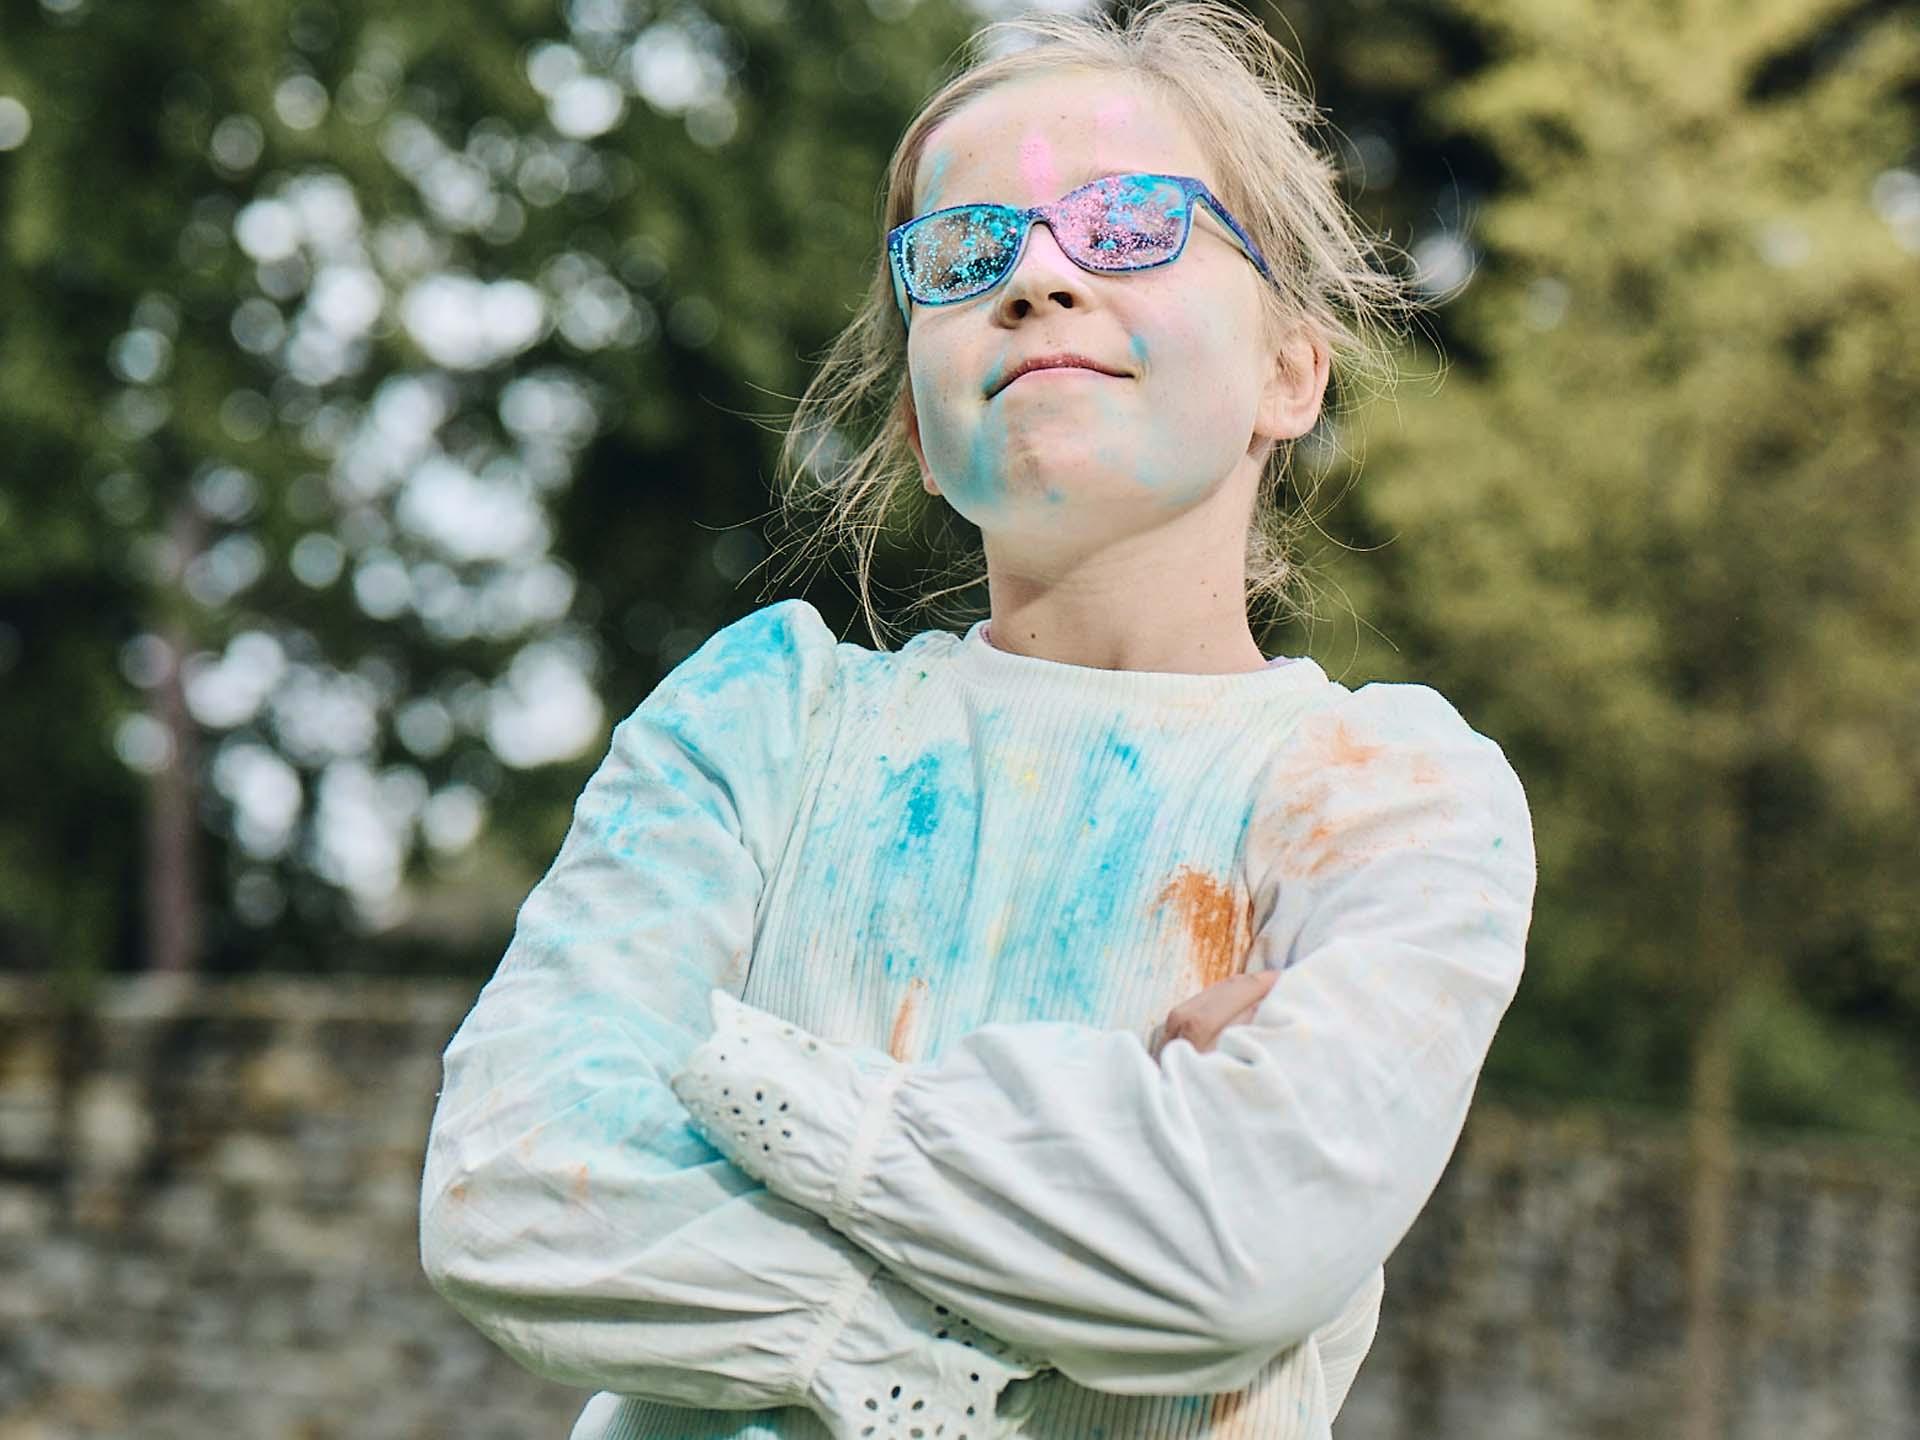 Dopo aver giocato con la polvere colorata, una bambina con le braccia incrociate e gli occhiali sporchi guarda coraggiosa e sorride.